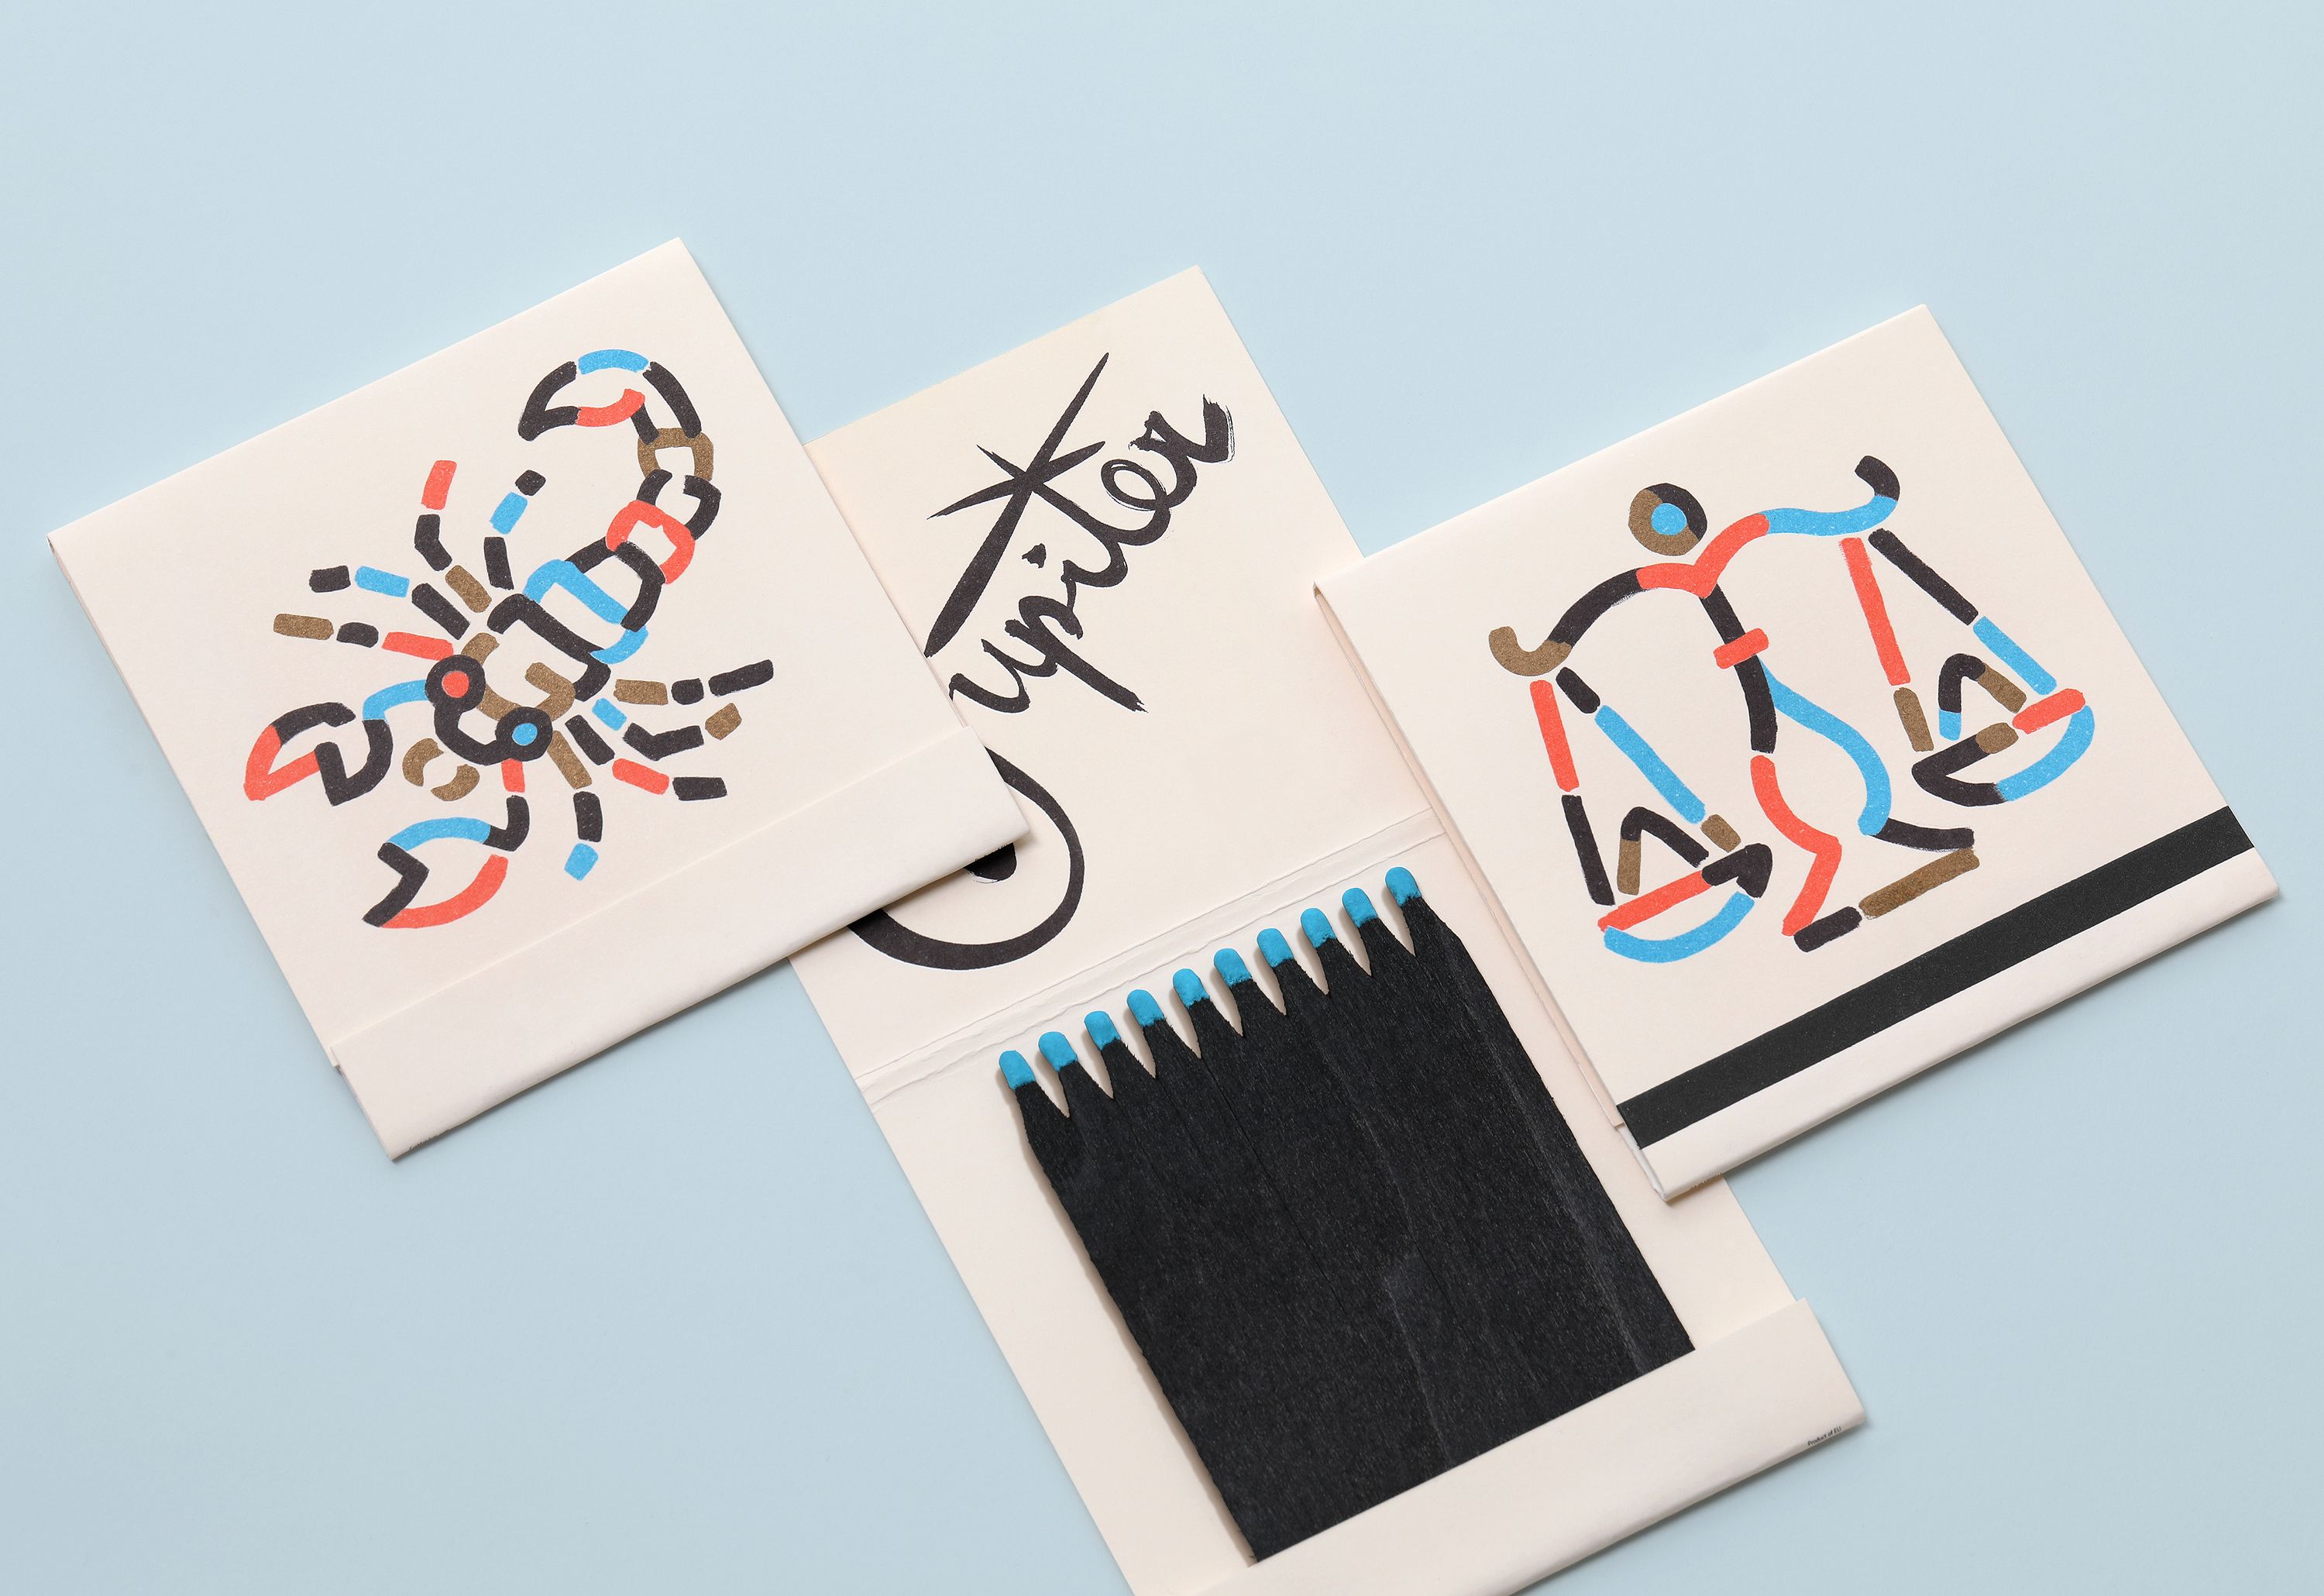 Branded matchbooks for New York restaurant Jupiter designed by Triboro